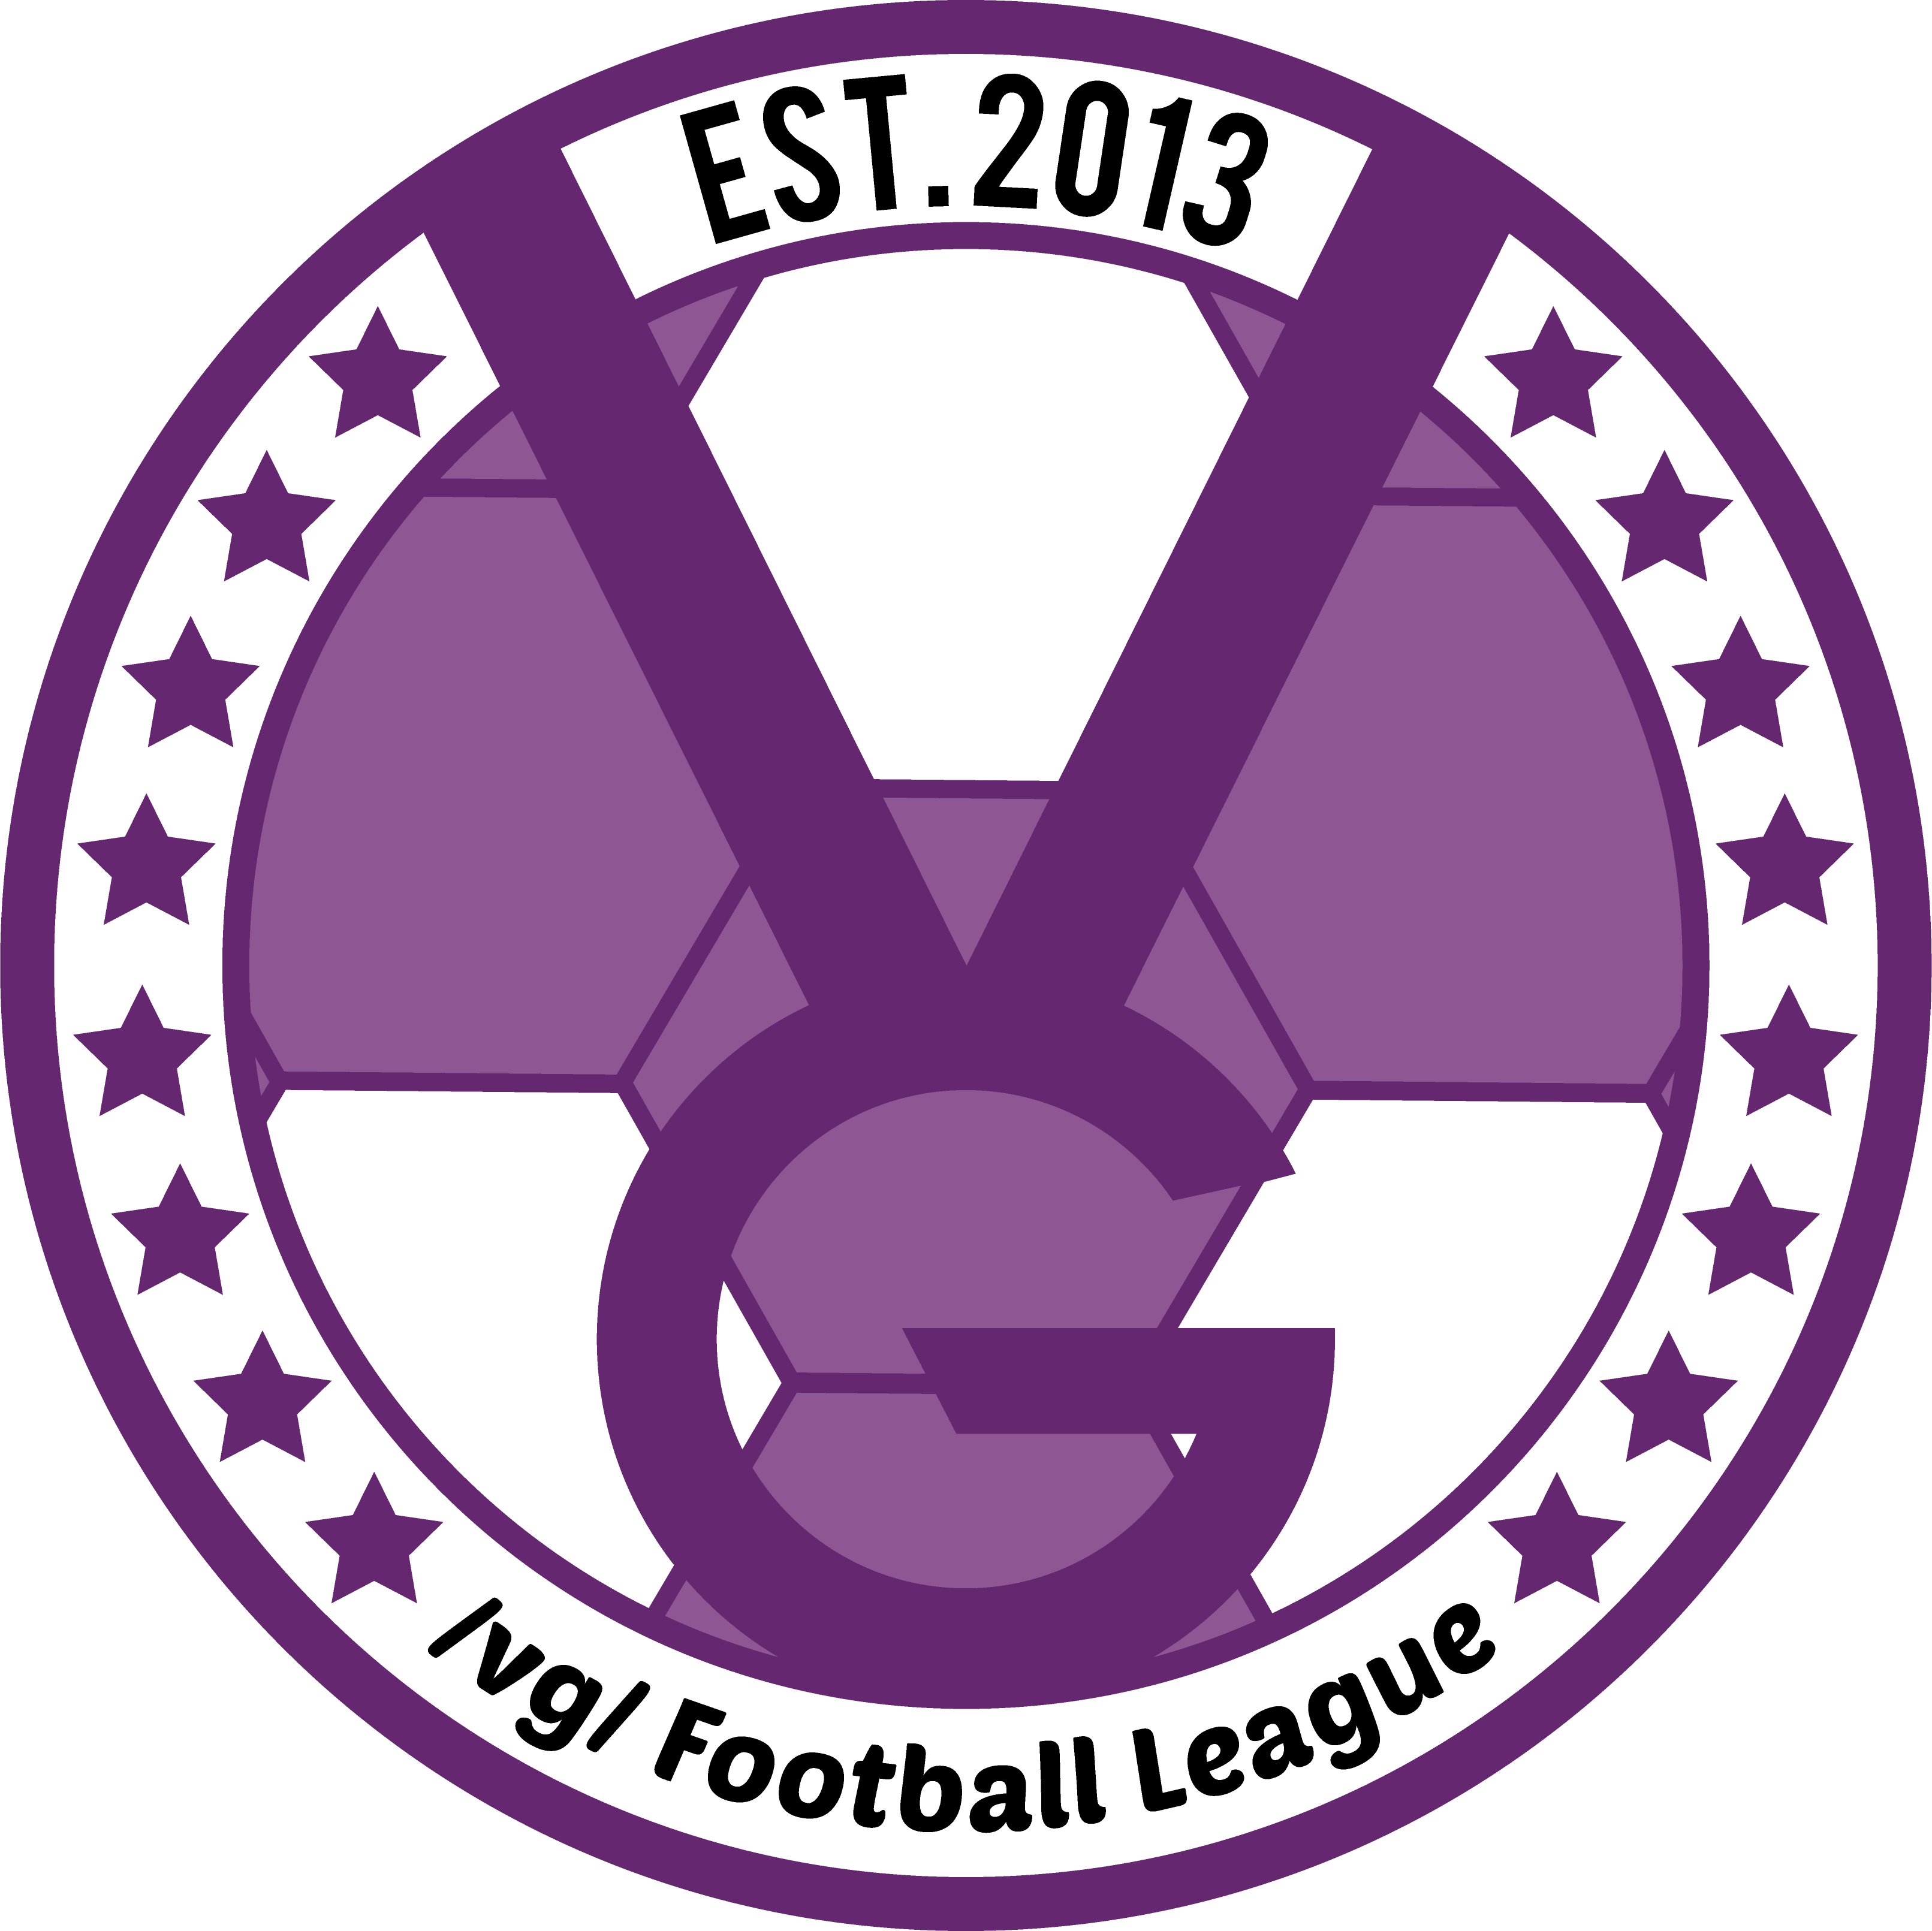 /vg/ League 3